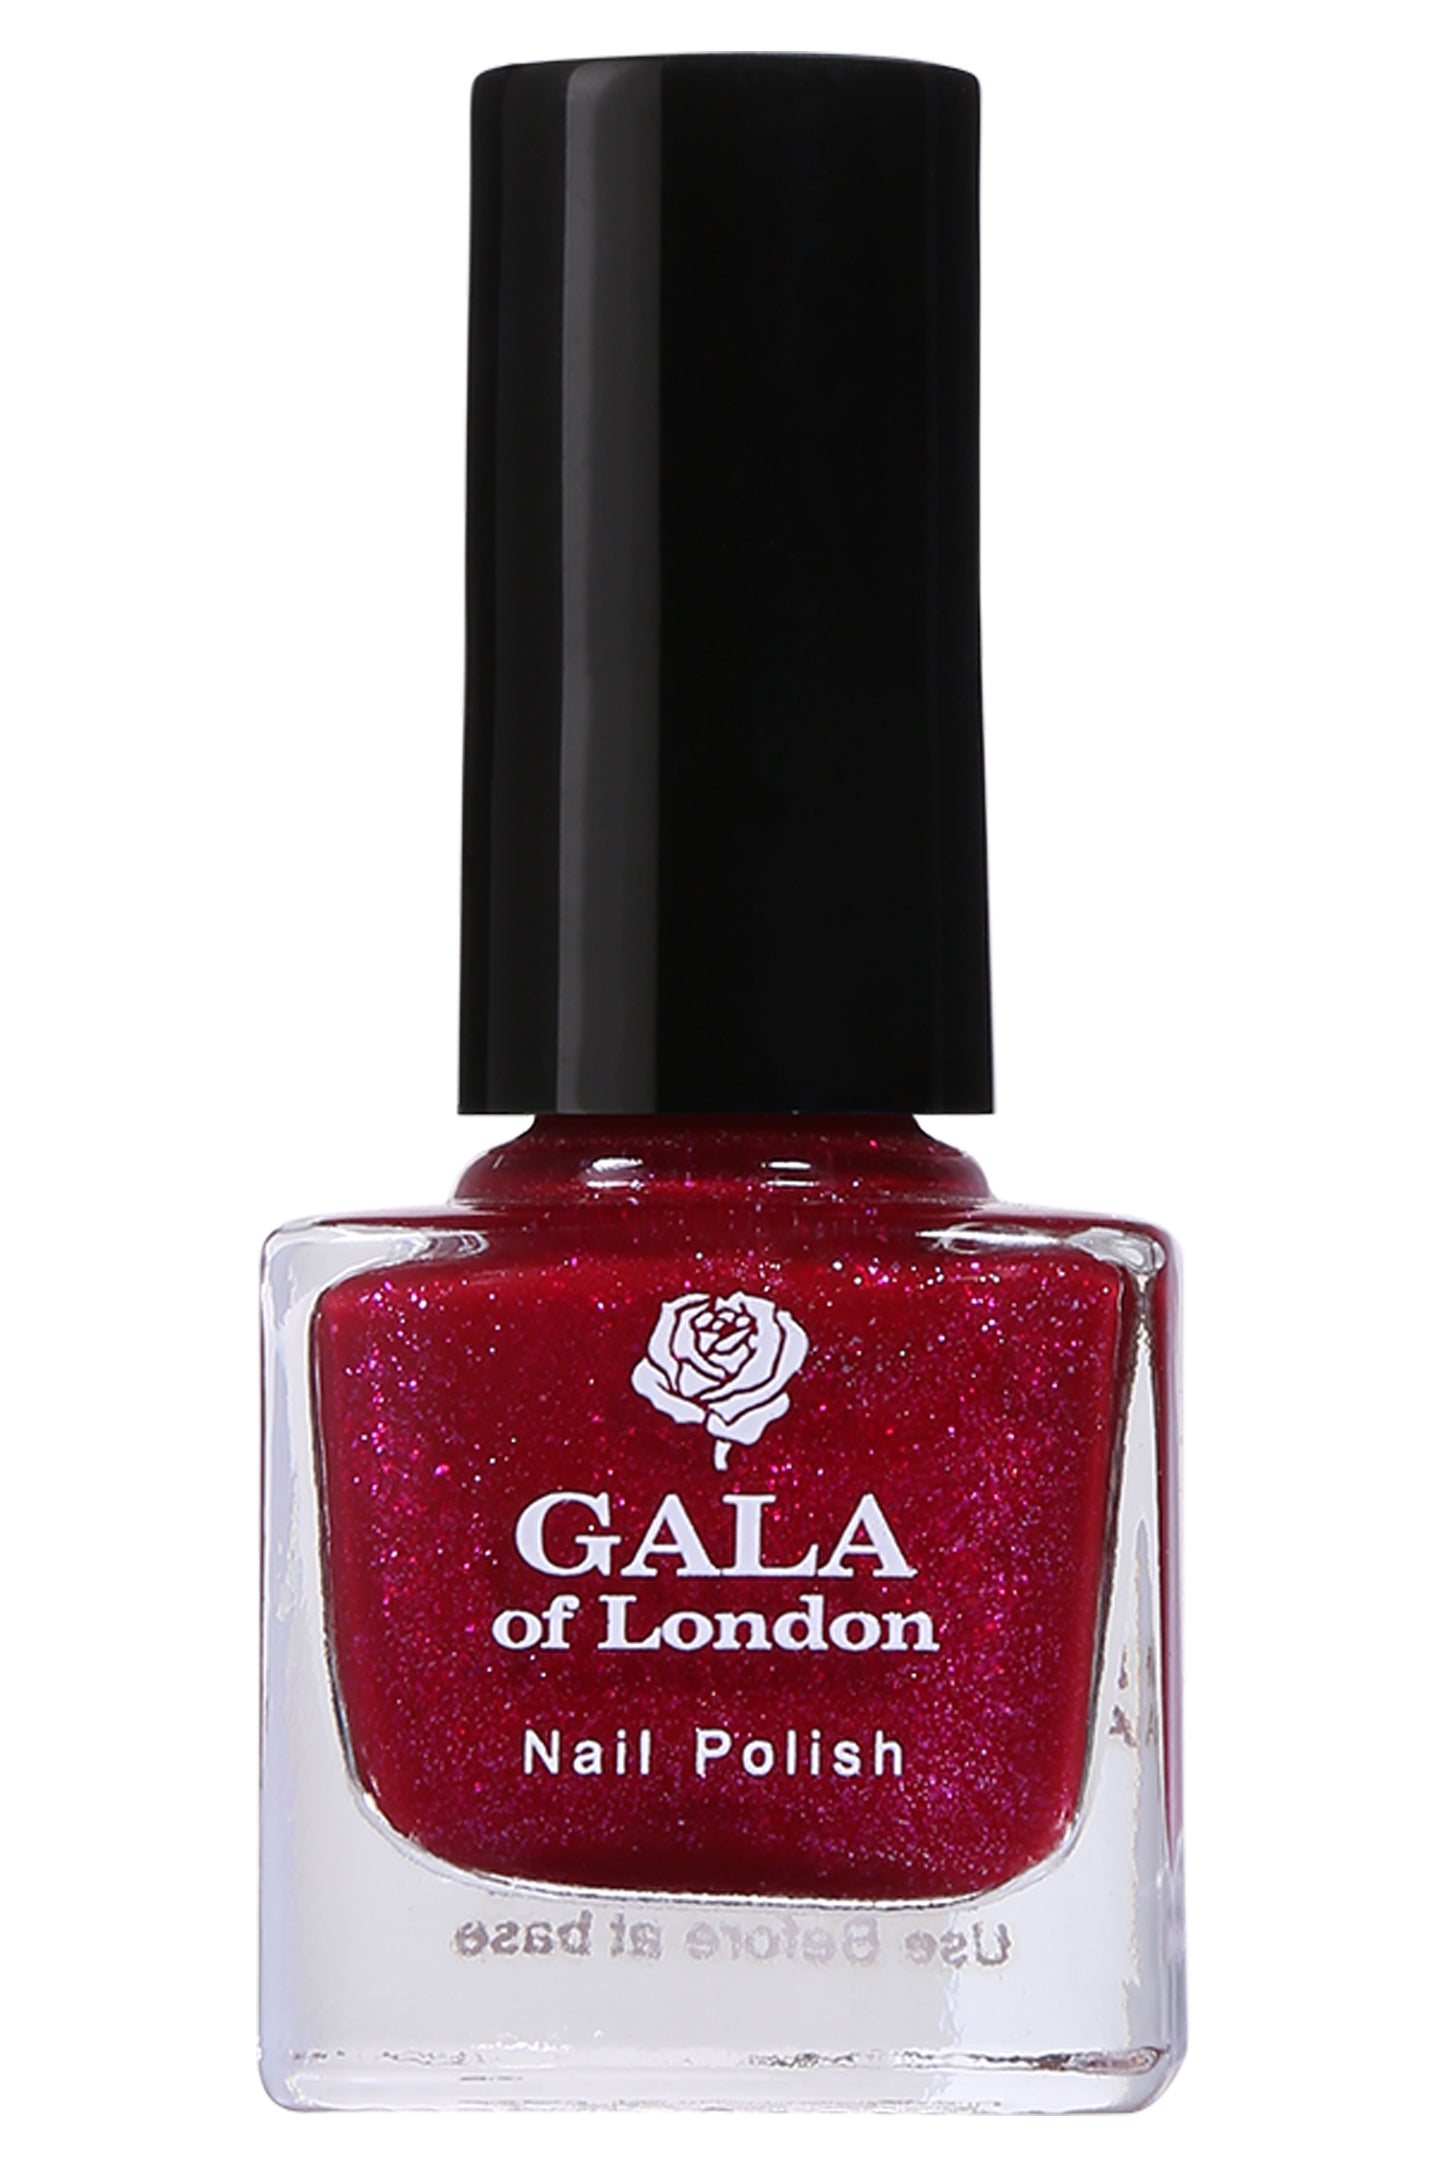 Gala of London S Series Nail Polish - Dark Pink - S8